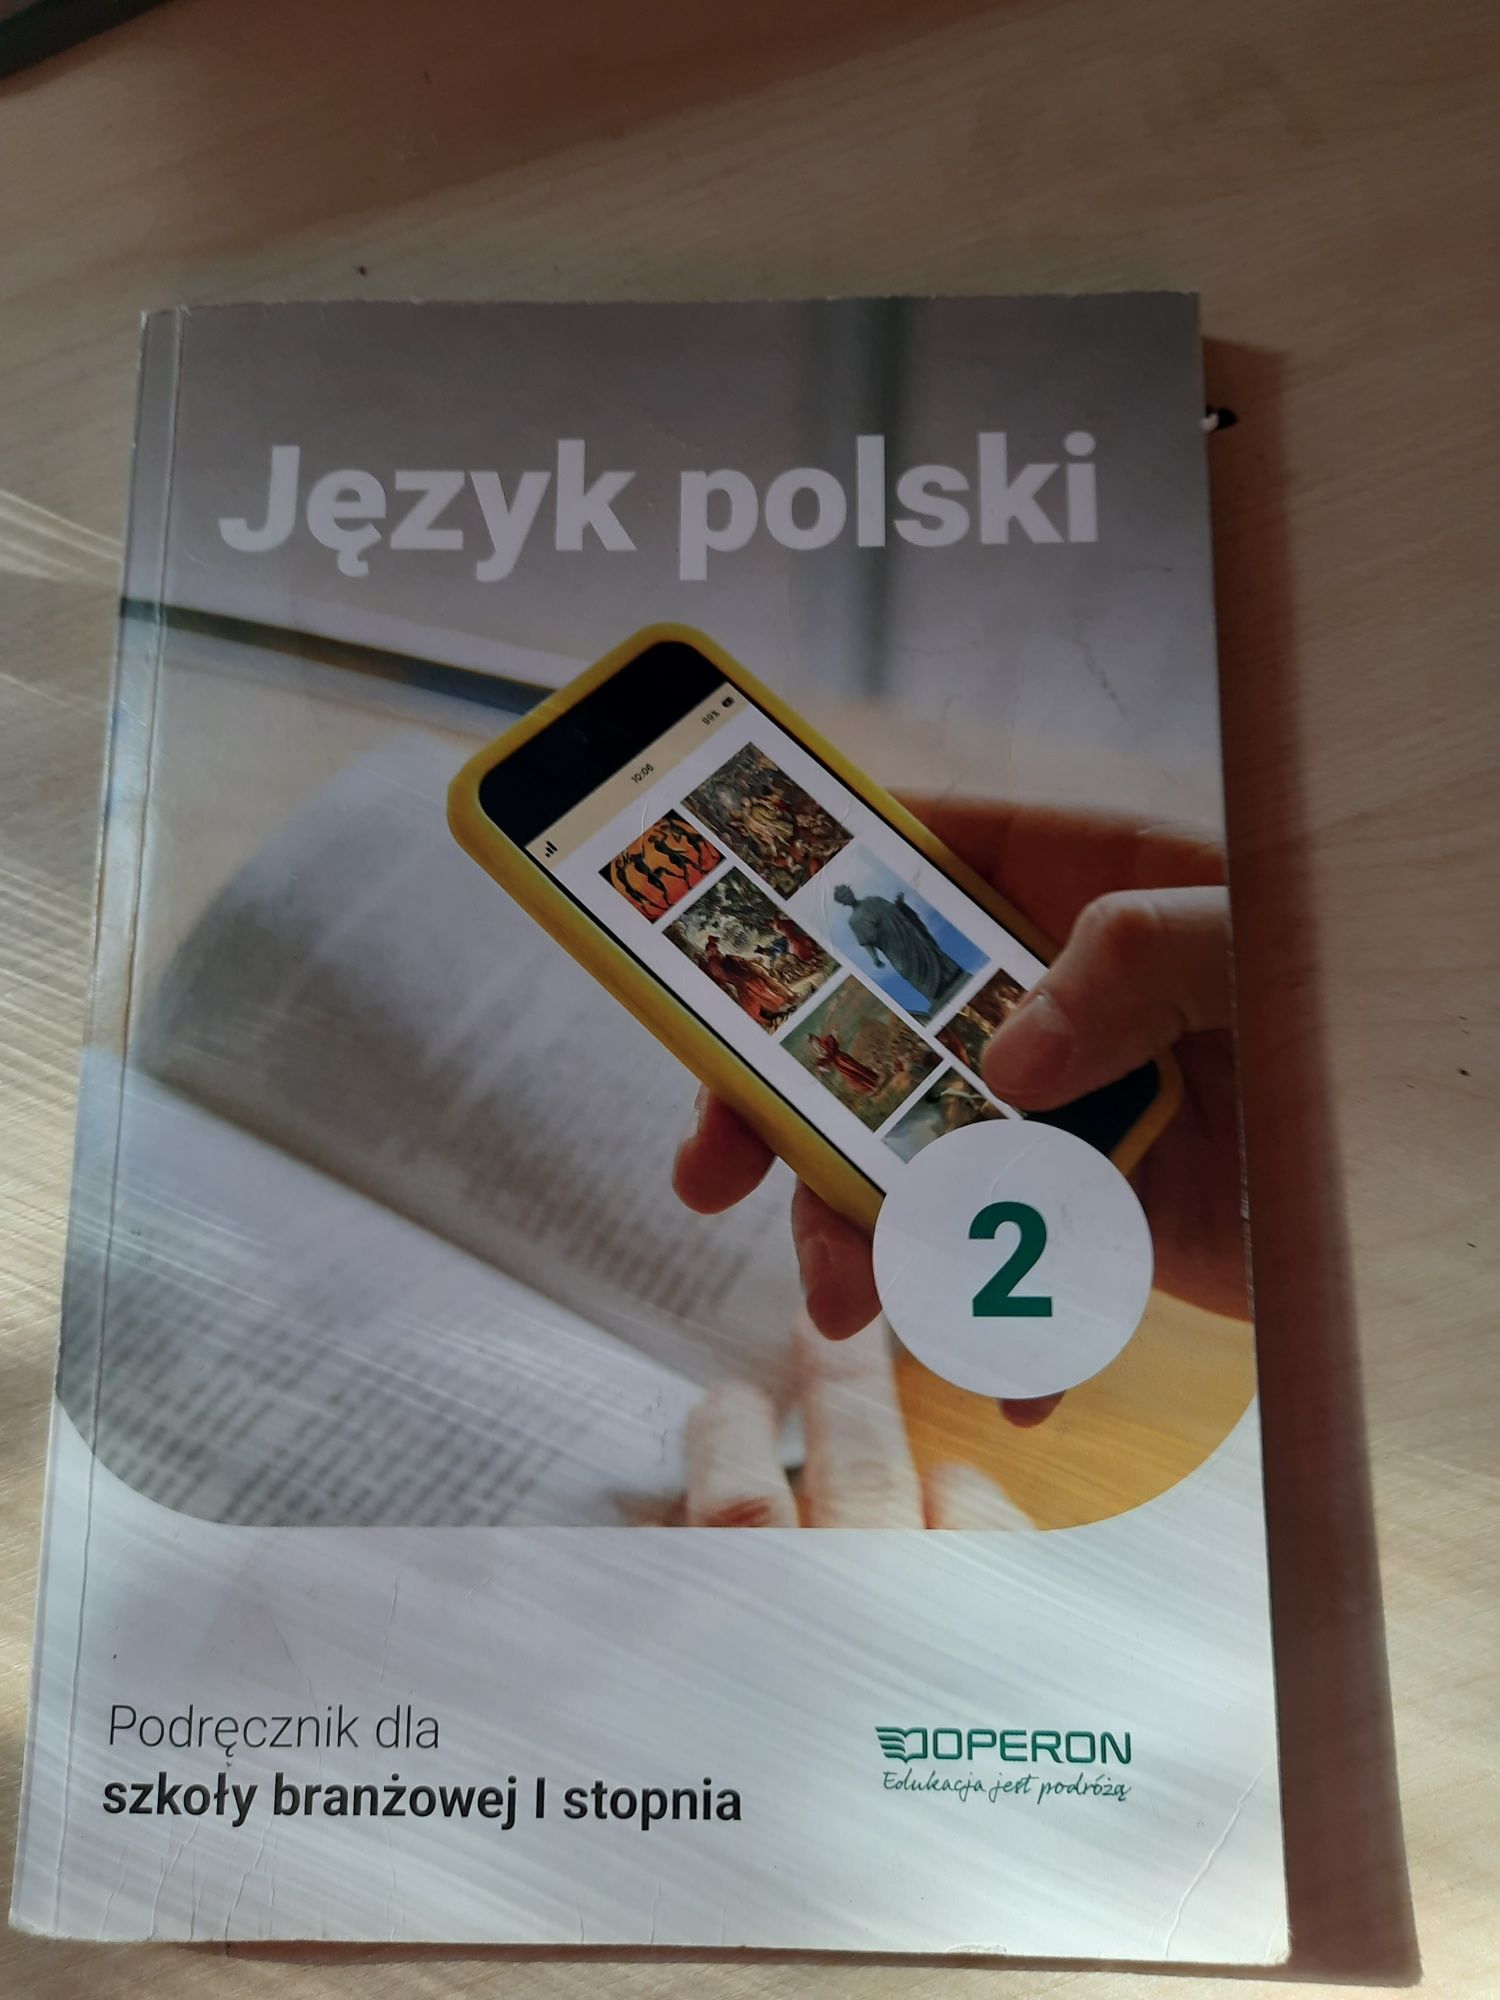 Język polski 3 szkoła branżowa Operon